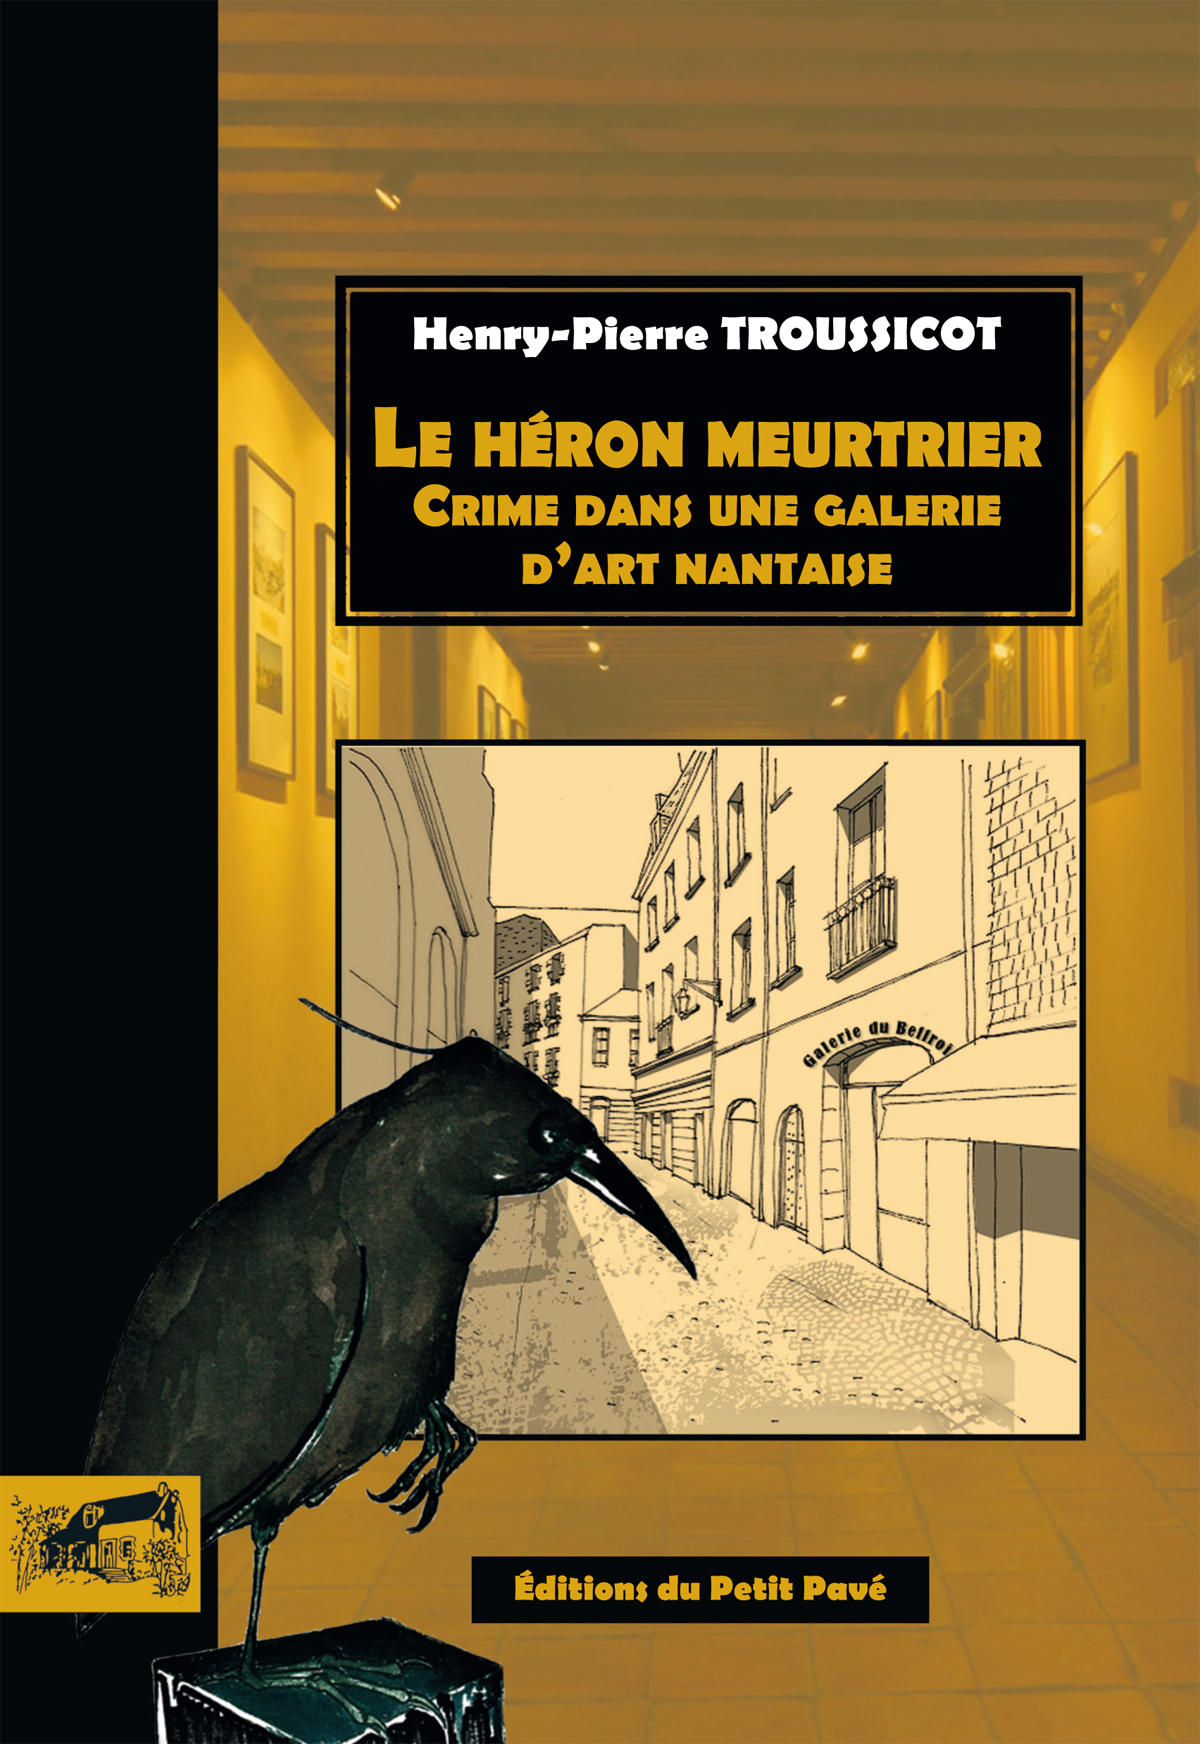 Le h�ron meurtrier - Photo le_heron_meurtrier_de_henry-pierre_troussicot_aux_editions_du_petit_pave.jpg